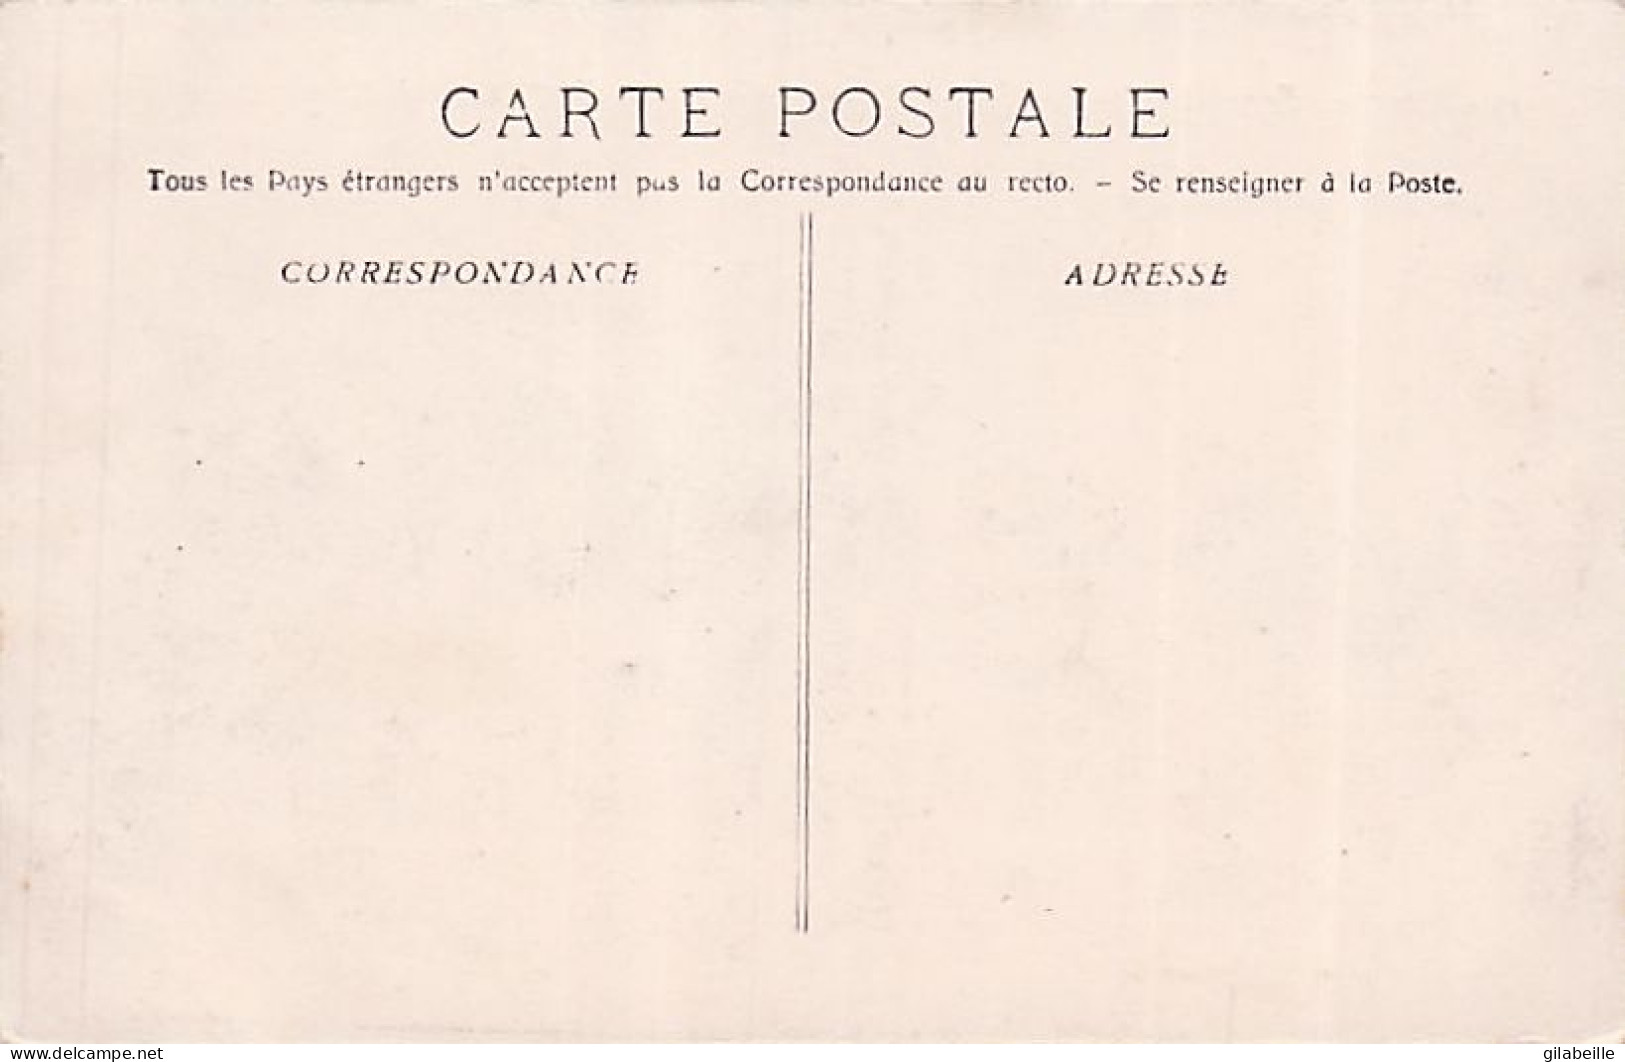 13 - MARSEILLE - exposition coloniale 1906 - lot 8 cartes - parfait etat